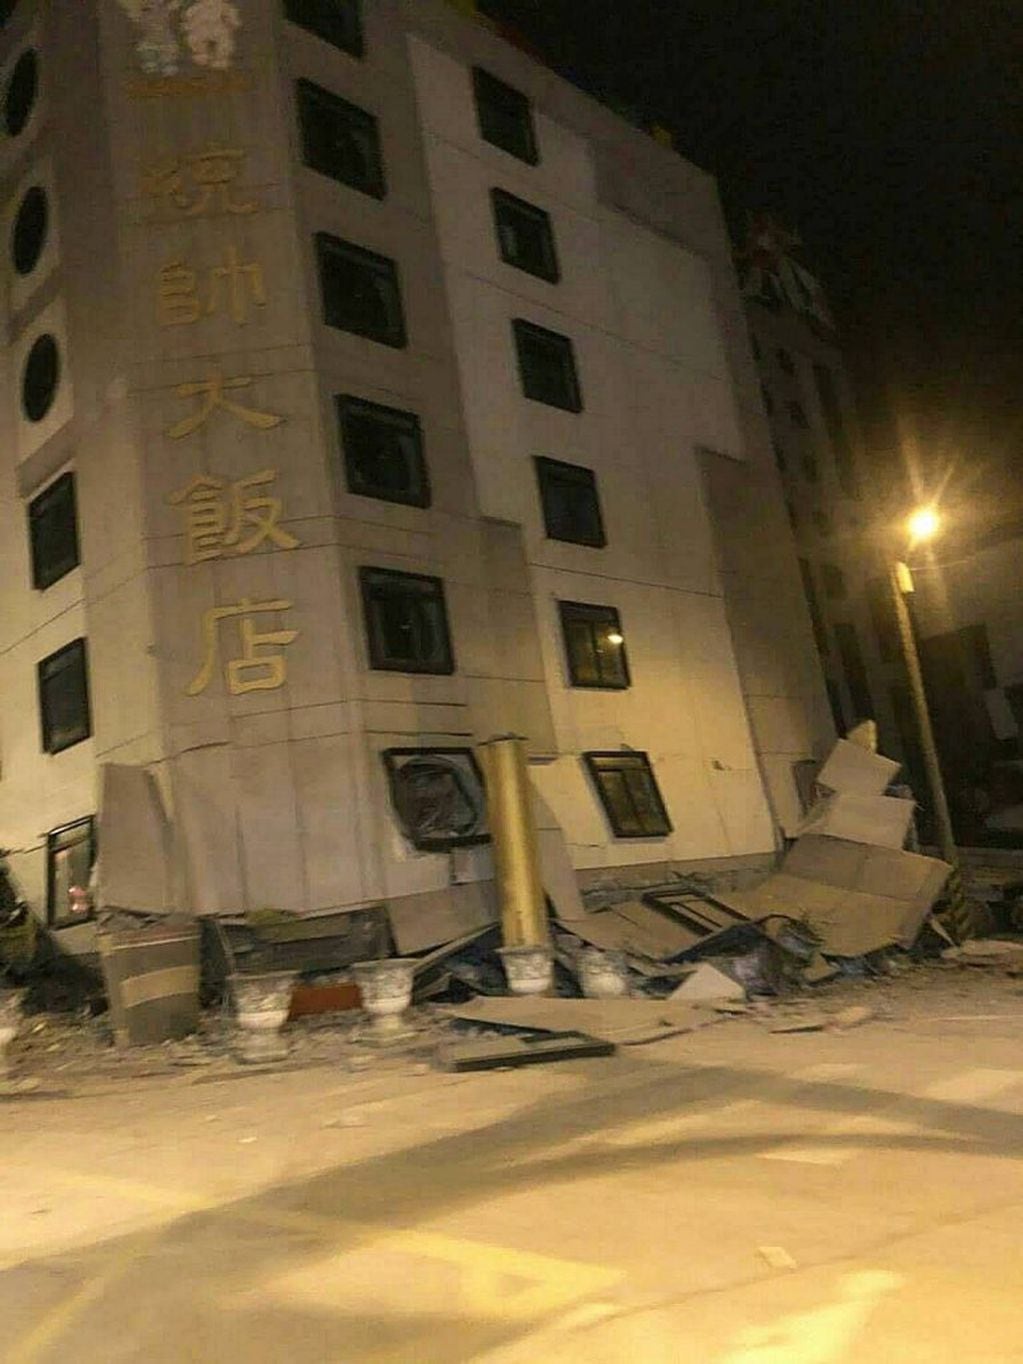 TWN01. HUALIEN CITY (TAIWÁN), 07/02/2018.- Vista del hotel Tongshuai dañado tras el terremoto de 6,4 grados de magnitud en la escala de Richter, que sacudió Hualien, en la costa este de Taiwán, hoy, 6 de febrero de 2018. Las autoridades de Taiwán informan de personas atrapadas y daños en edificios e infraestructuras a causa del terremoto que sacudió hoy la isla y desencadenó el pánico entre los habitantes. EFE/ Str MEJOR CALIDAD DISPONIBLE